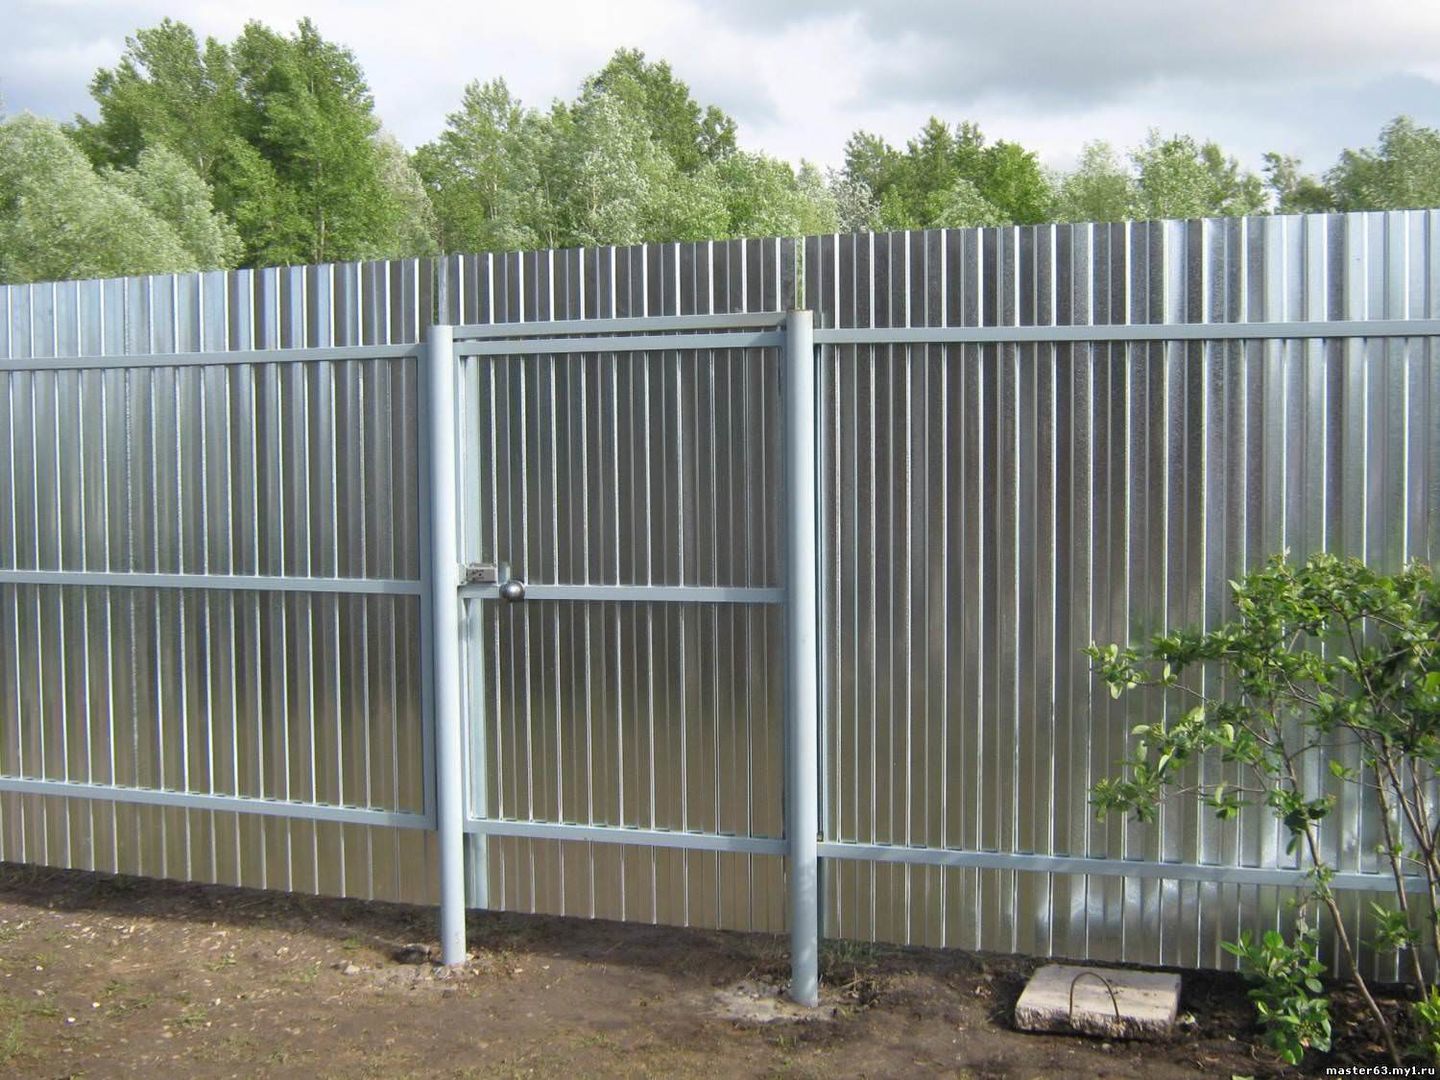 Сколько стоит лист железа на забор. Забор из профлиста. Заборы для дачи. Металлический забор из профлиста. Забор из профиля металлического.